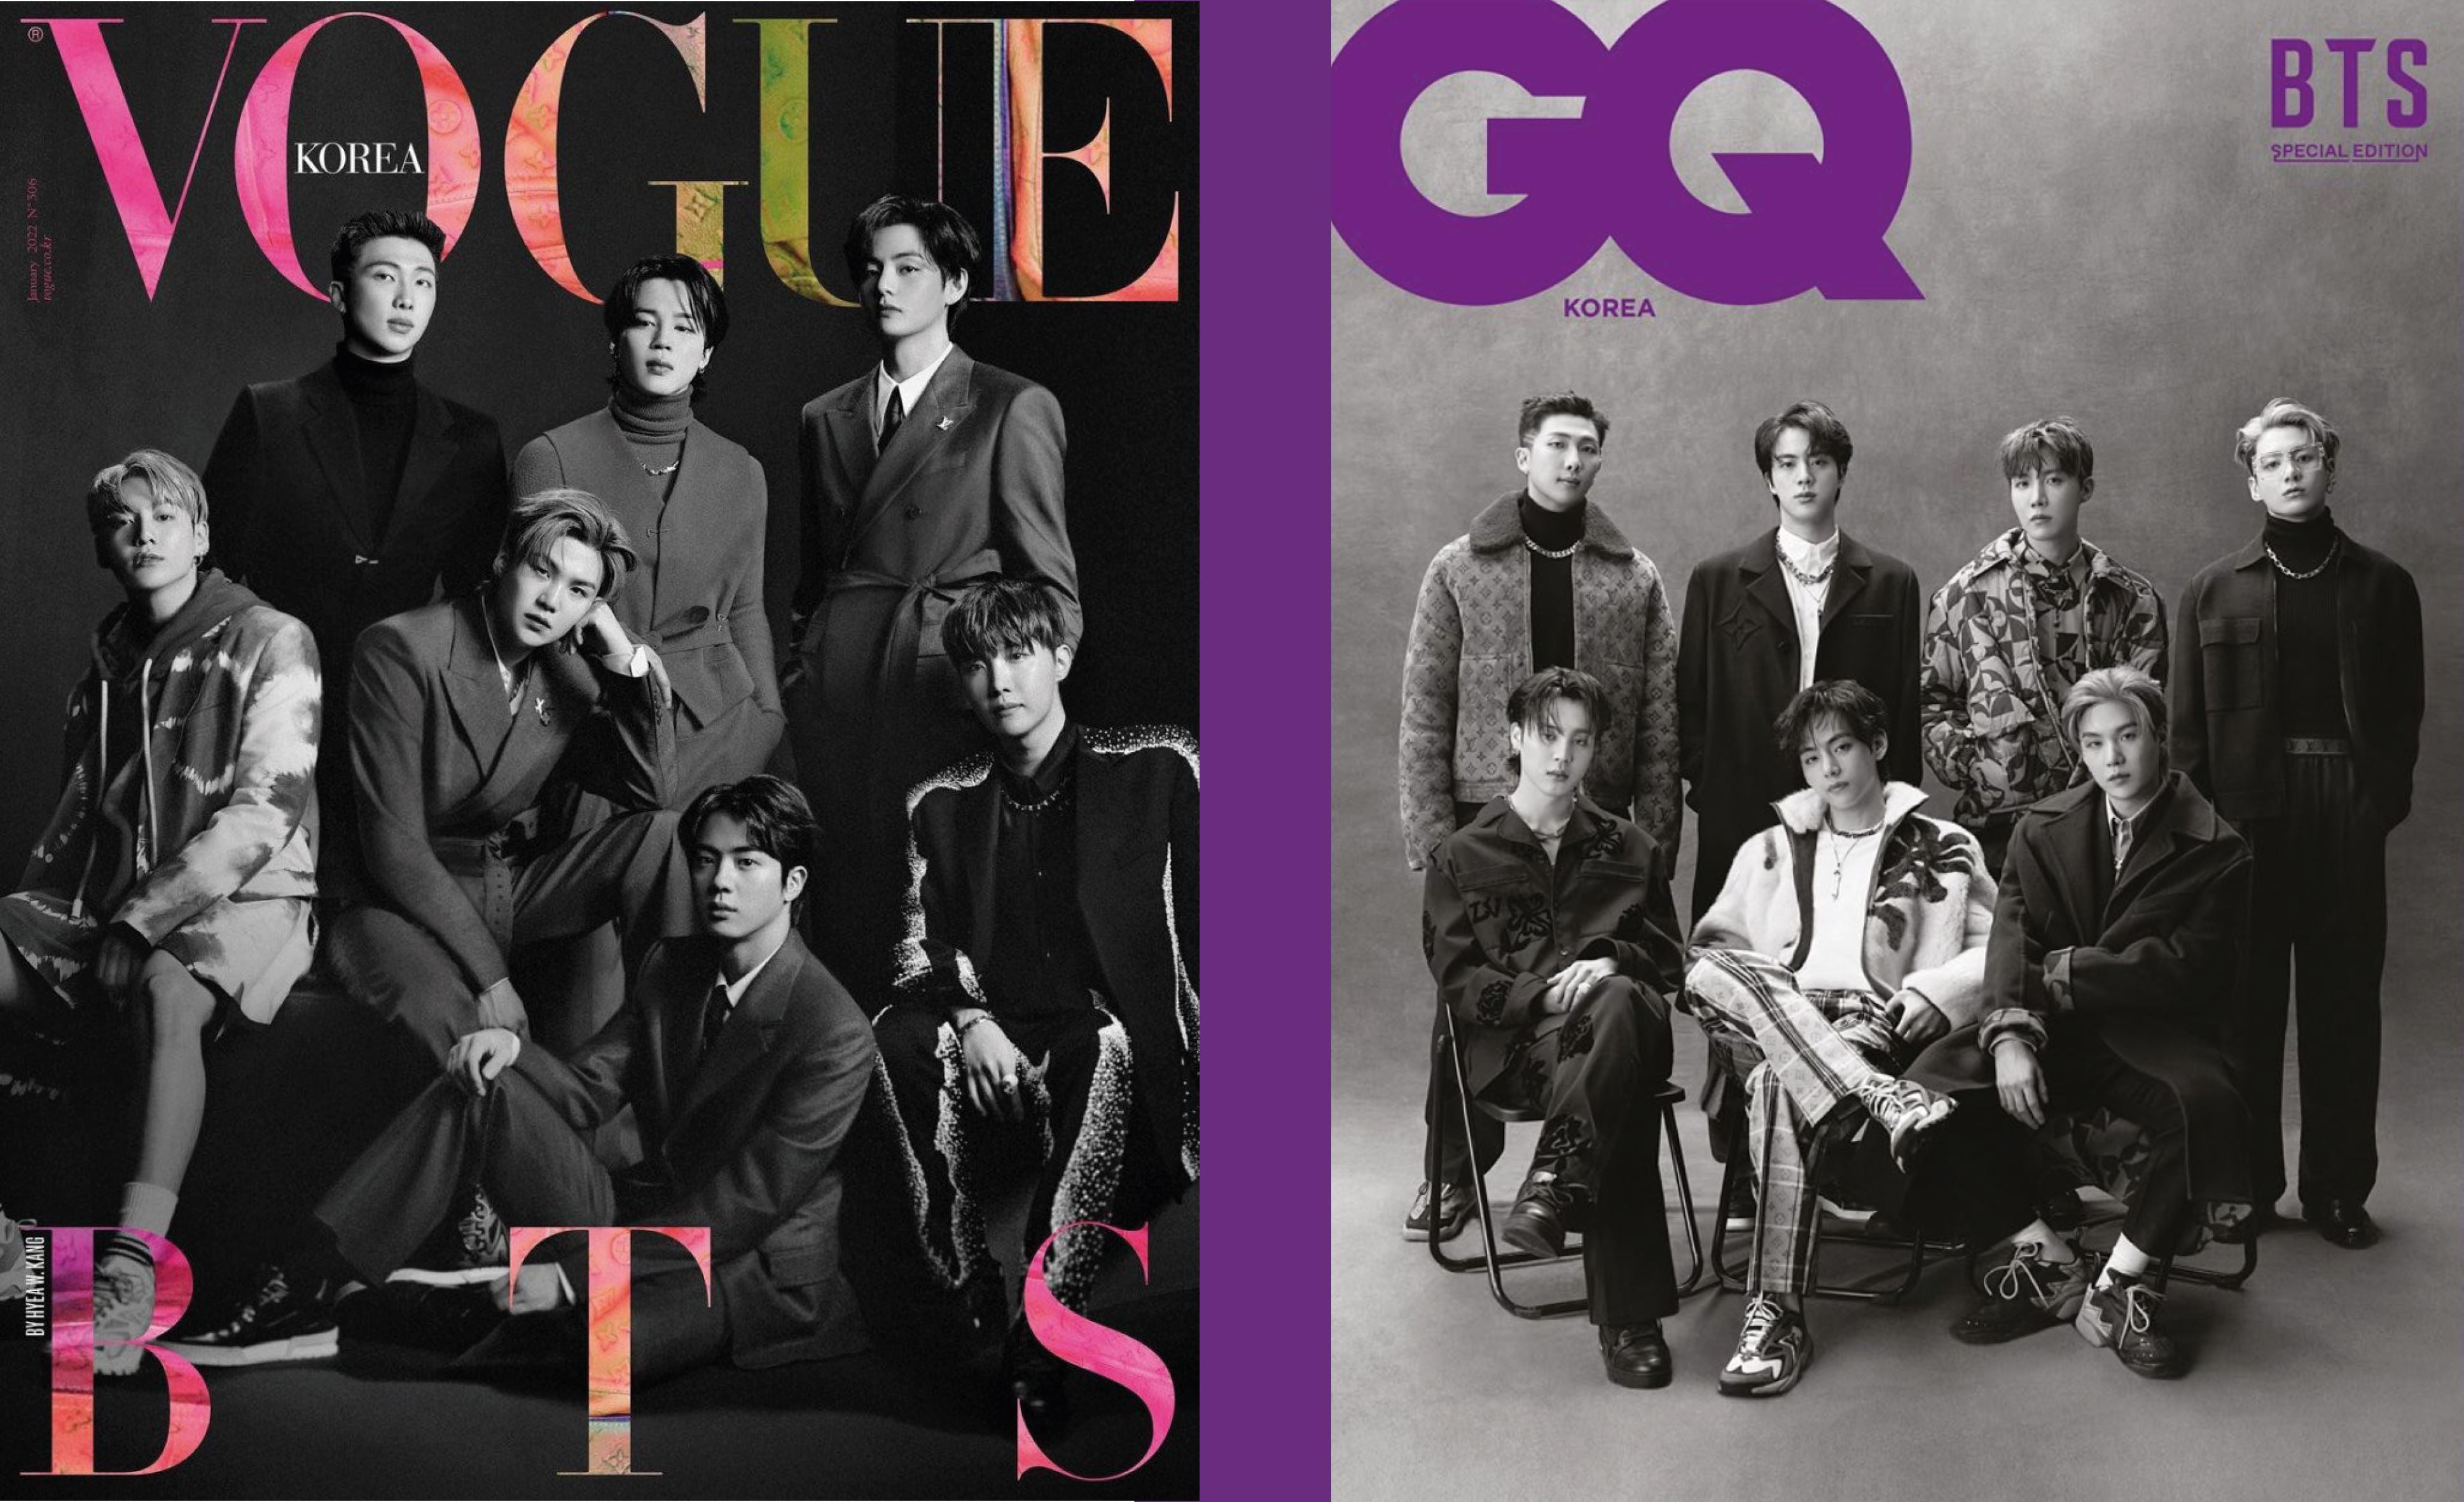 Vogue & GQ Korea präsentieren die globale Boygroup BTS!